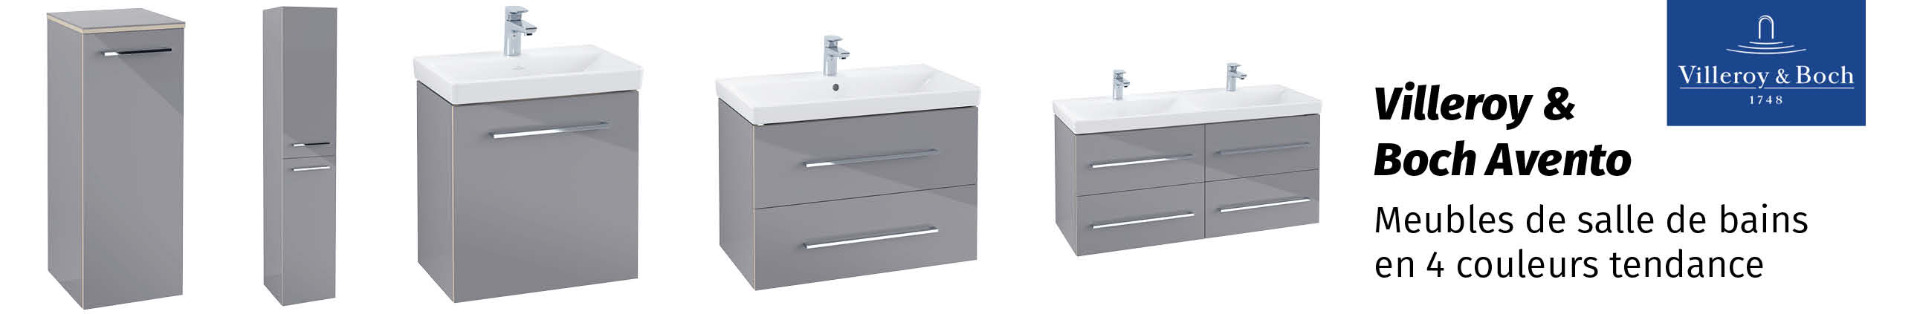 Villeroy & Boch Avento meubles de salle de bain